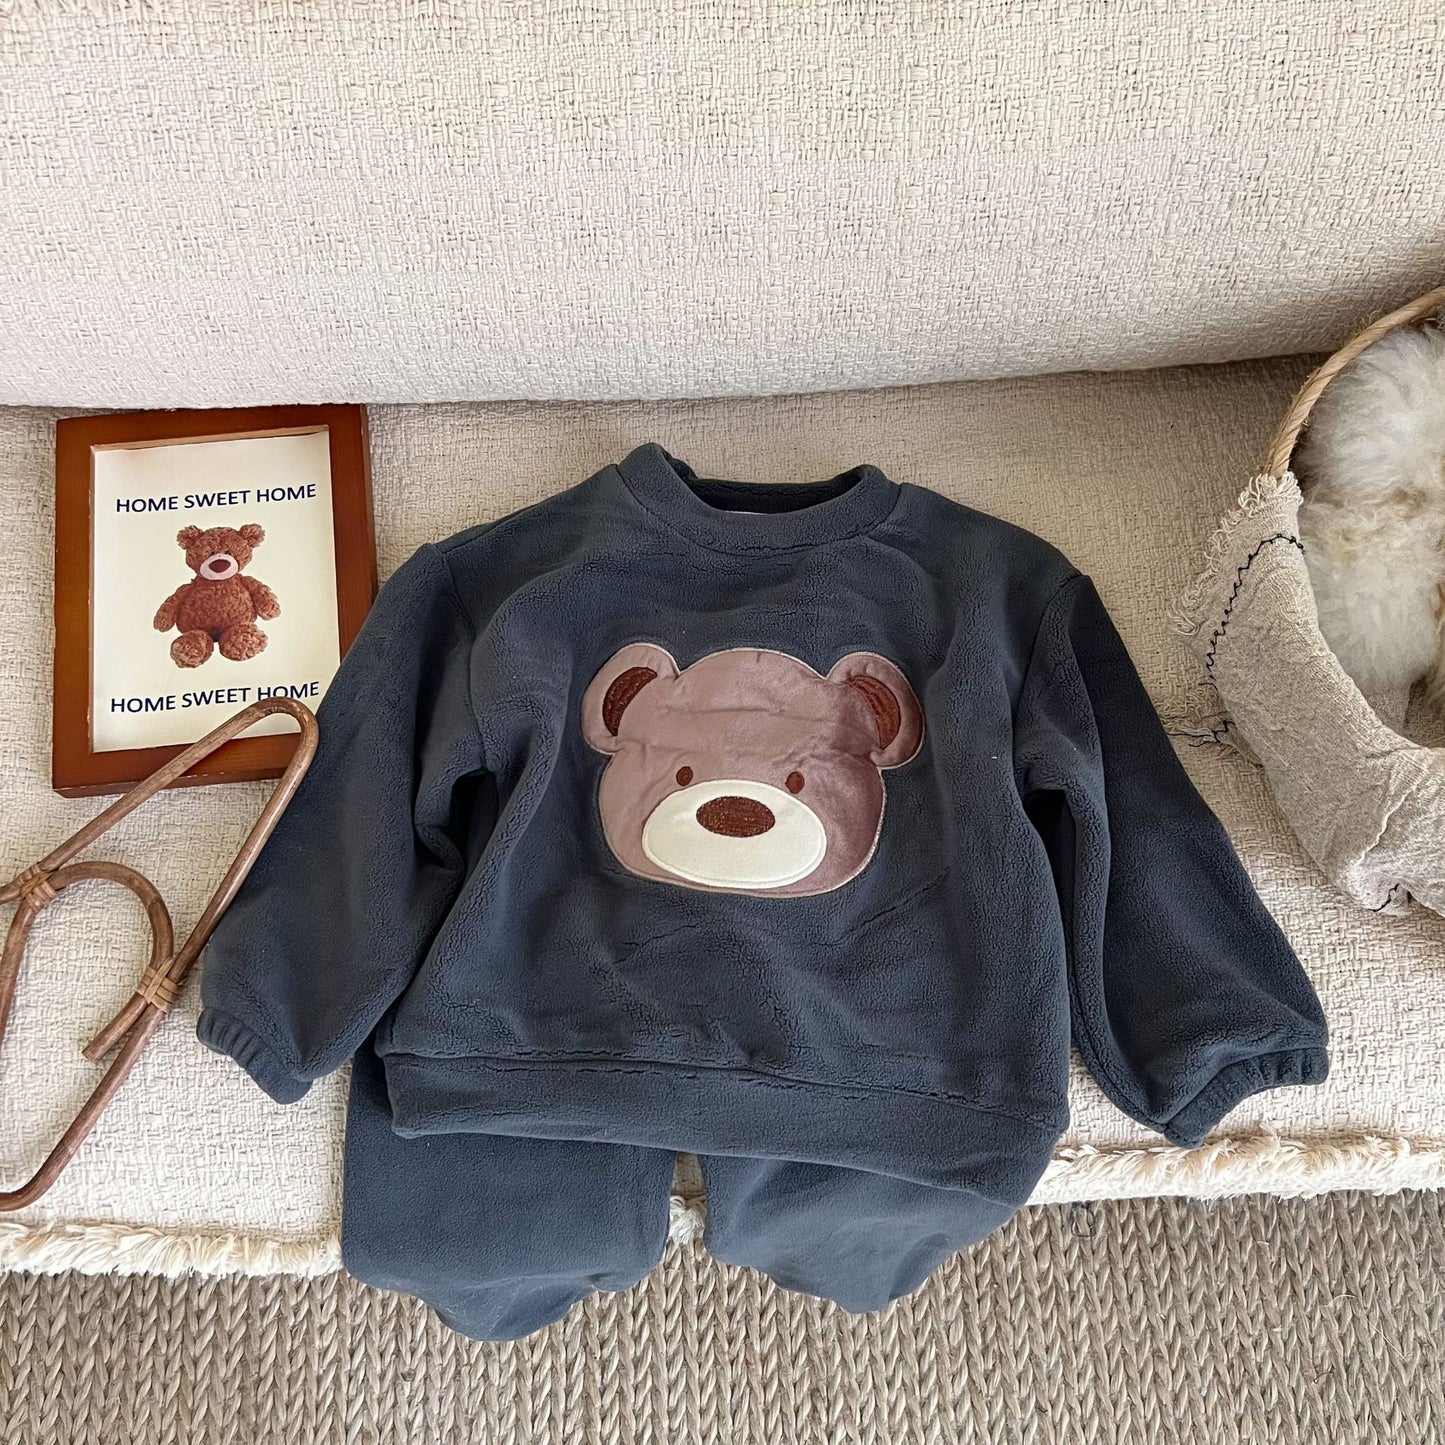 Children's Cartoon Warm Home Clothes Set